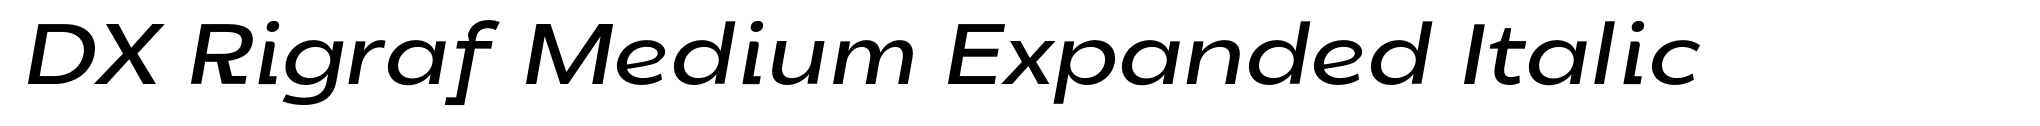 DX Rigraf Medium Expanded Italic image